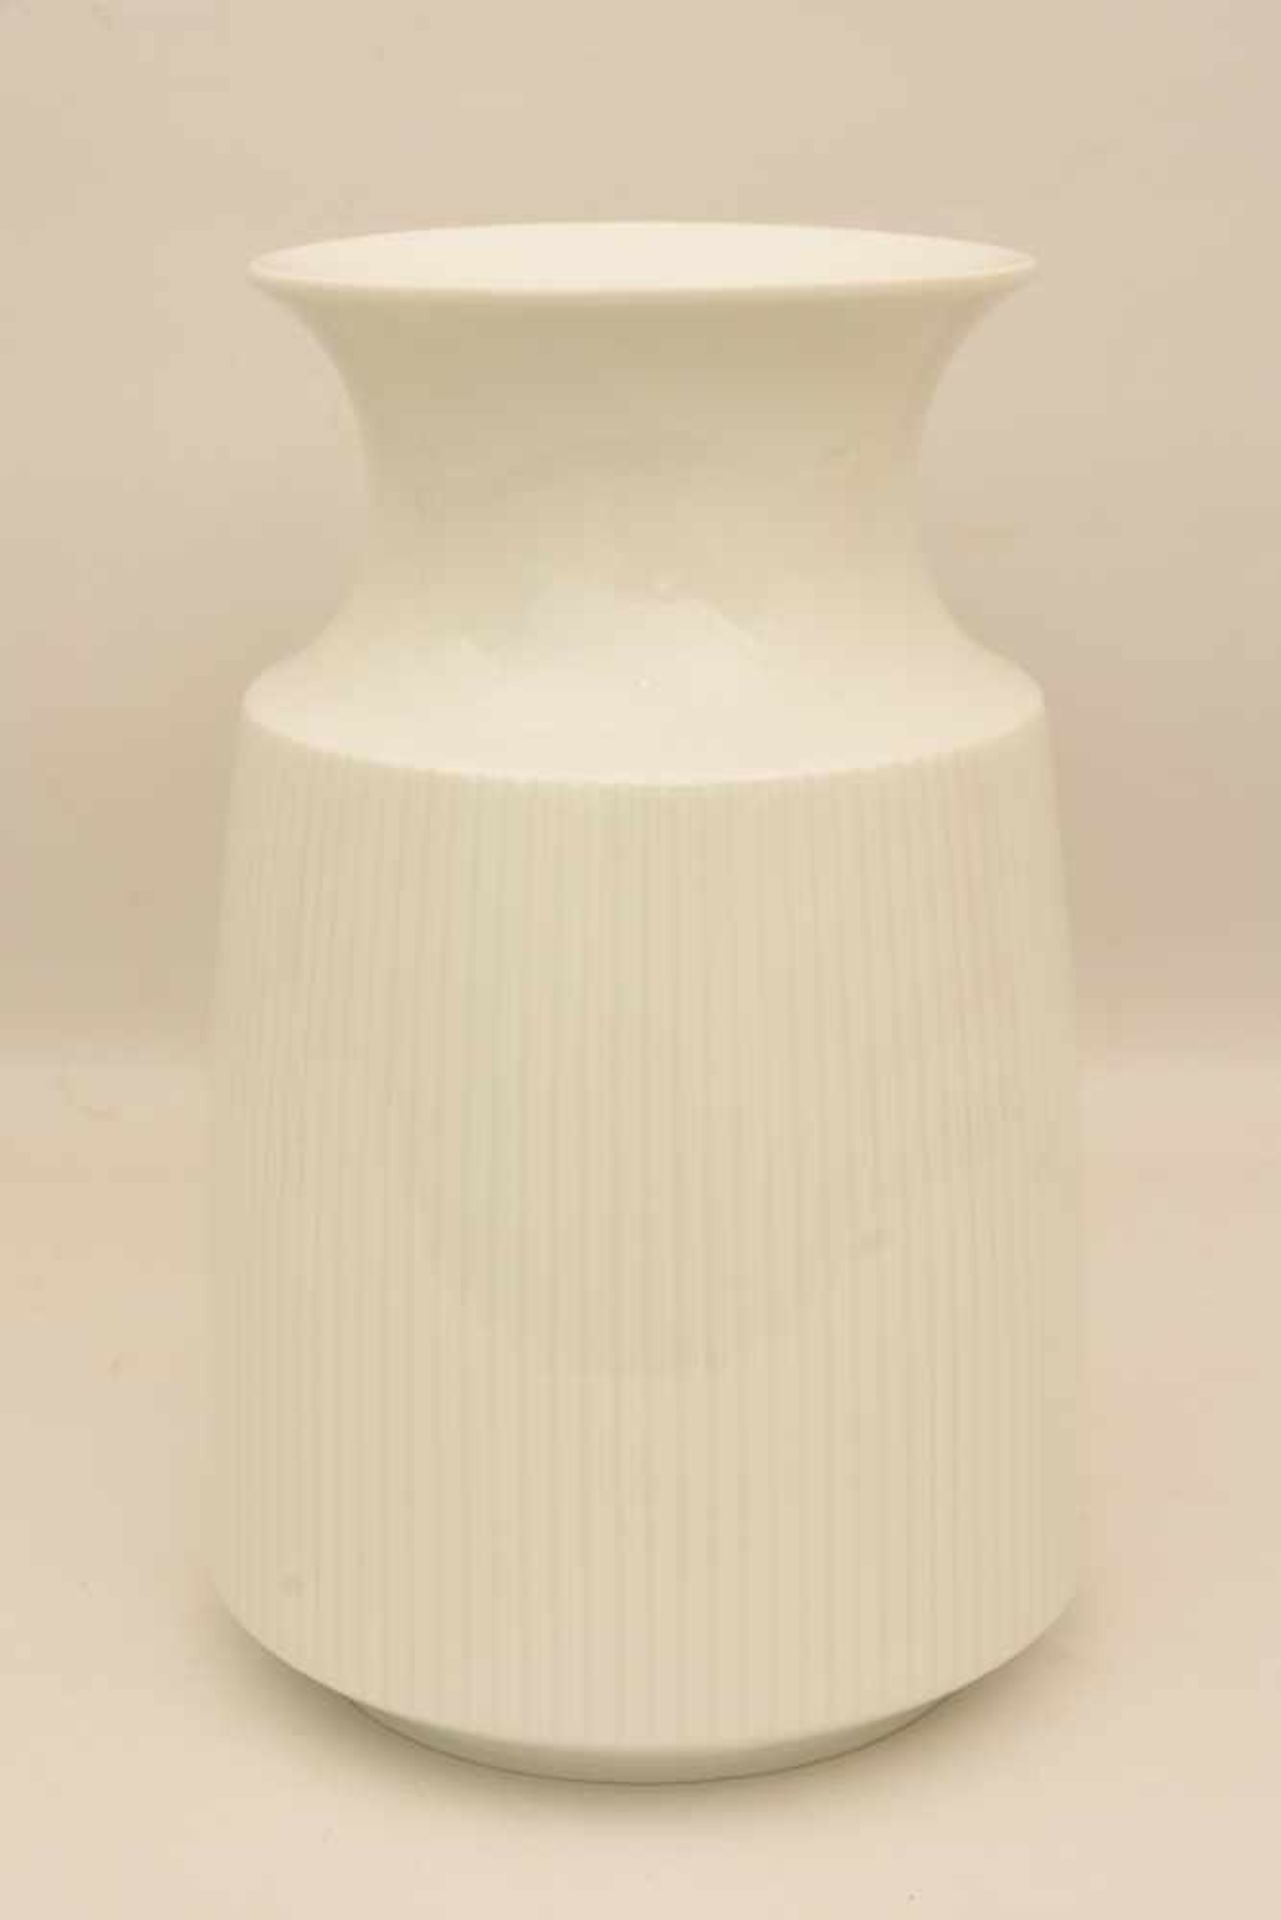 ROSENTHAL STUDIO LINE VASE, glasiertes Weißporzellan, gemarkt, 20. Jahrhundert Vase im Art Deco-